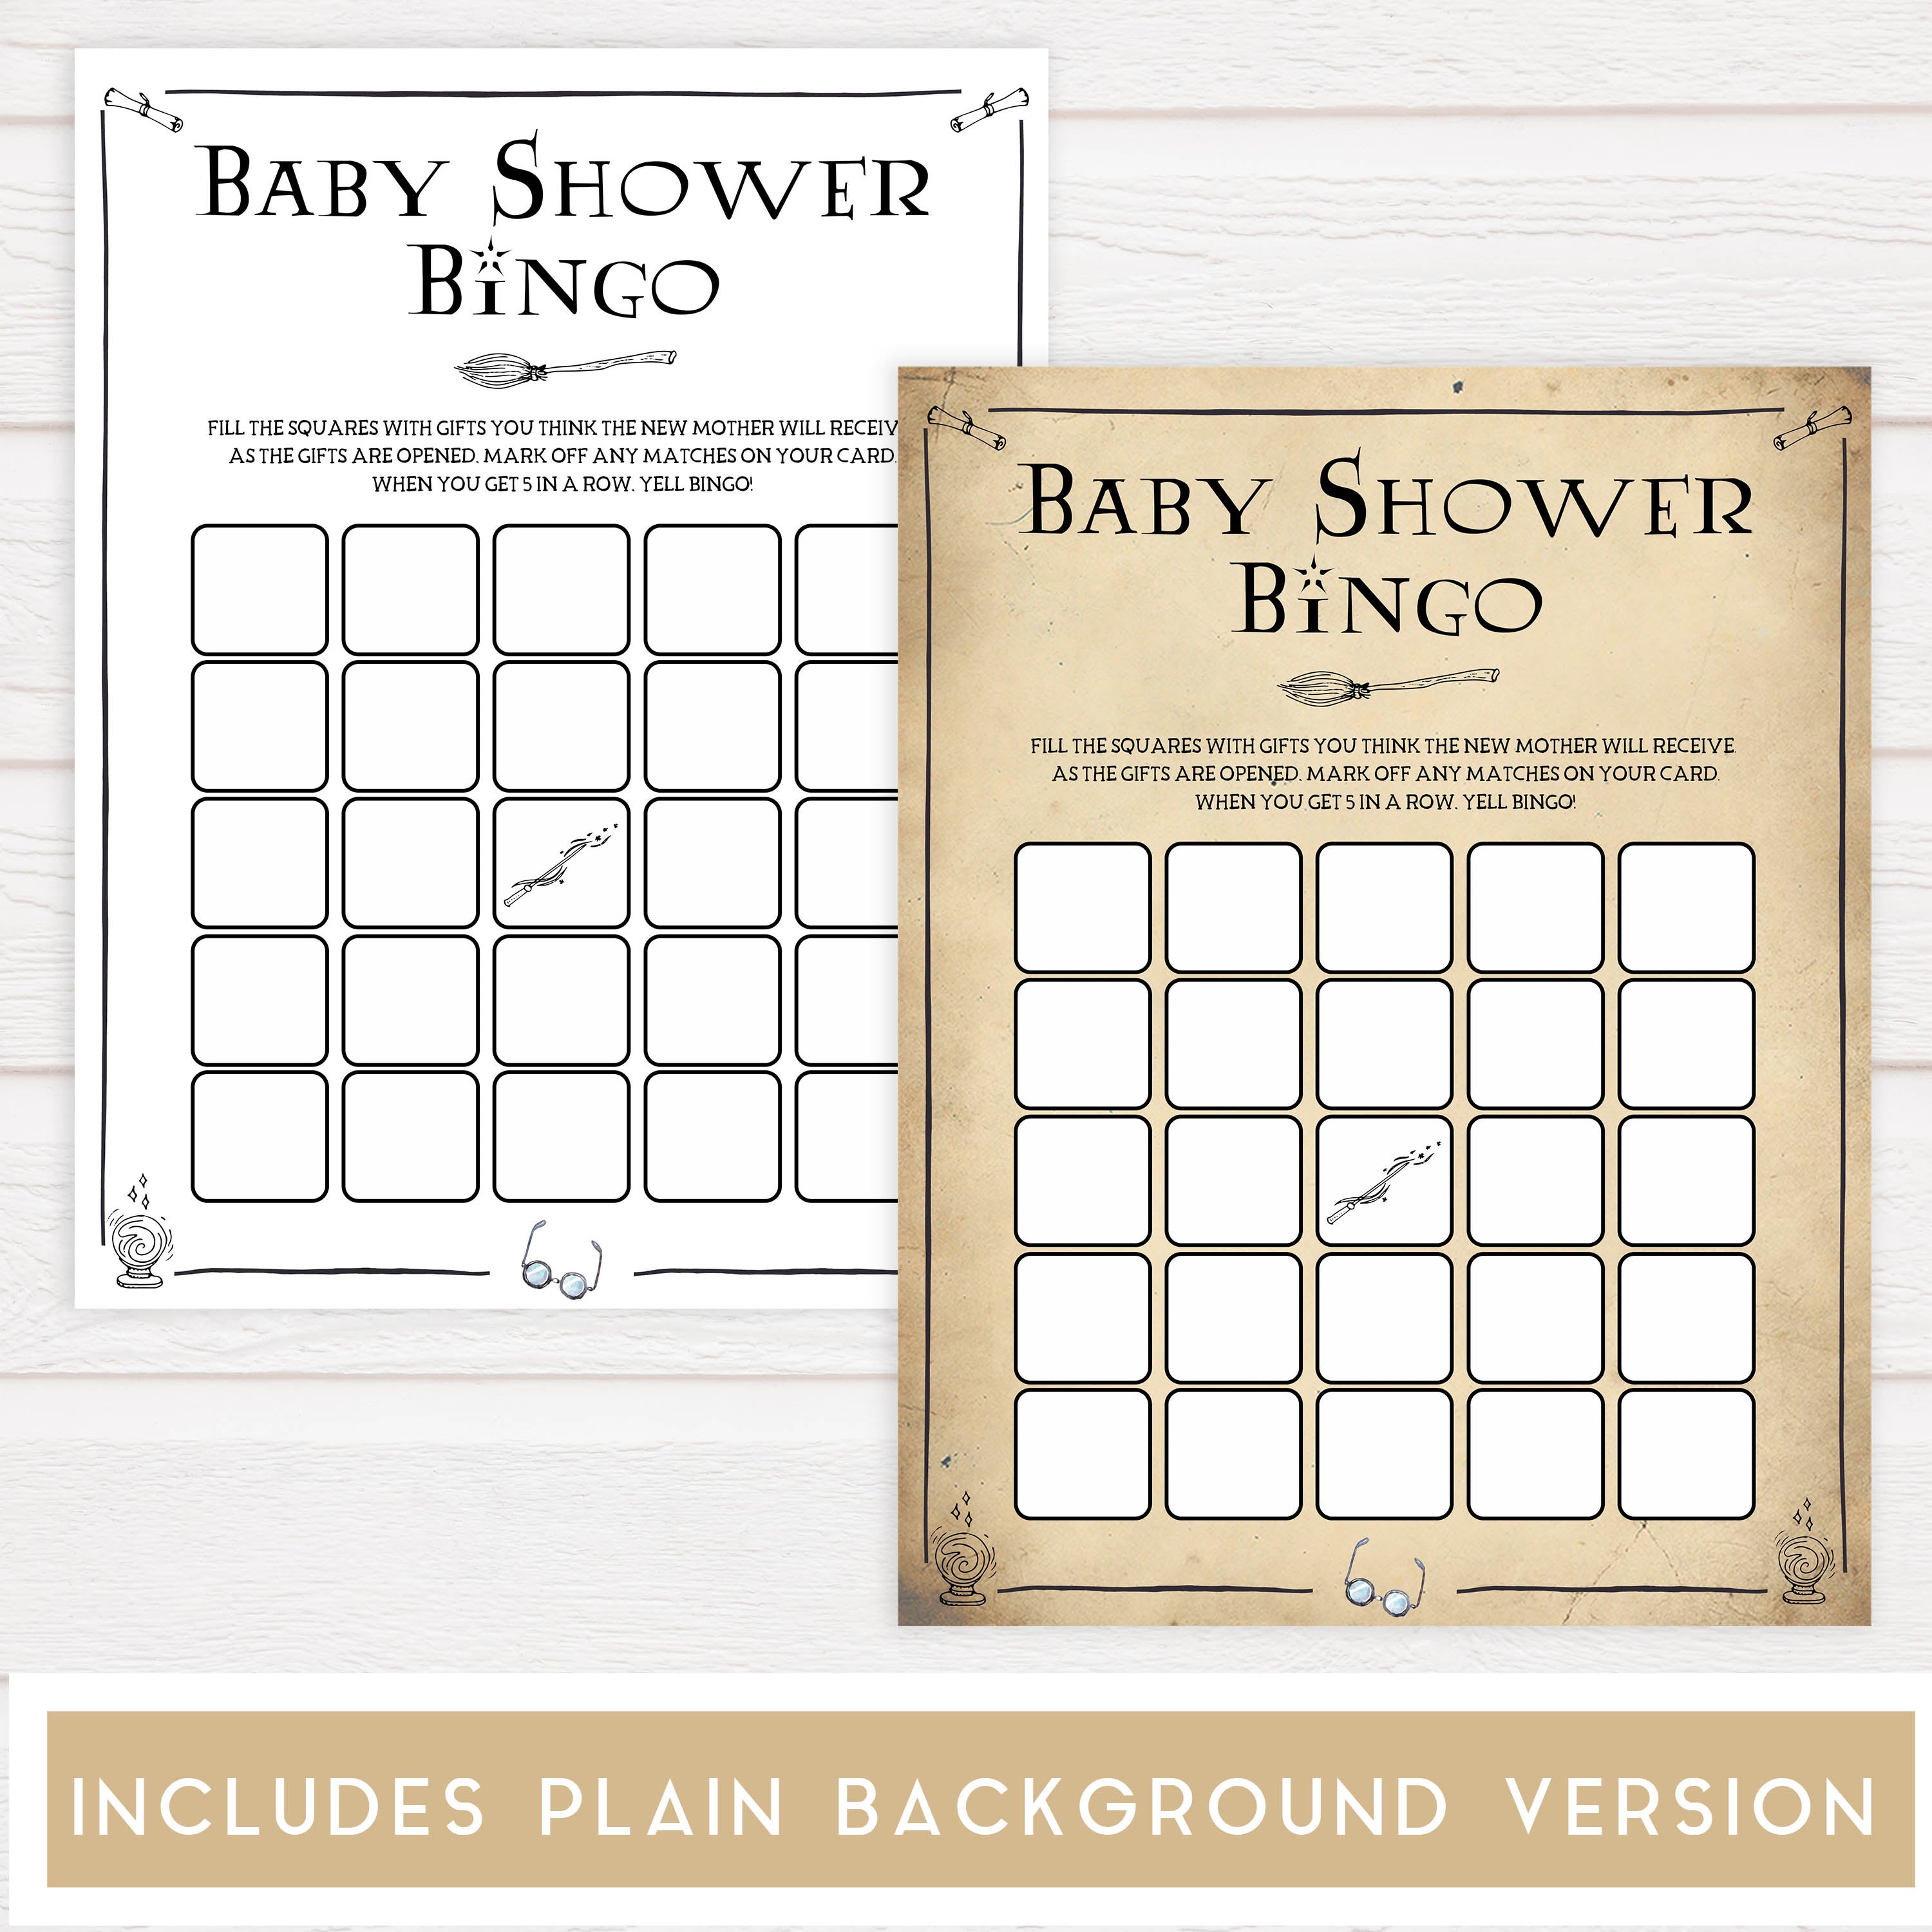 Baby Shower Bingo, Wizard baby shower games, printable baby shower games, Harry Potter baby games, Harry Potter baby shower, fun baby shower games,  fun baby ideas